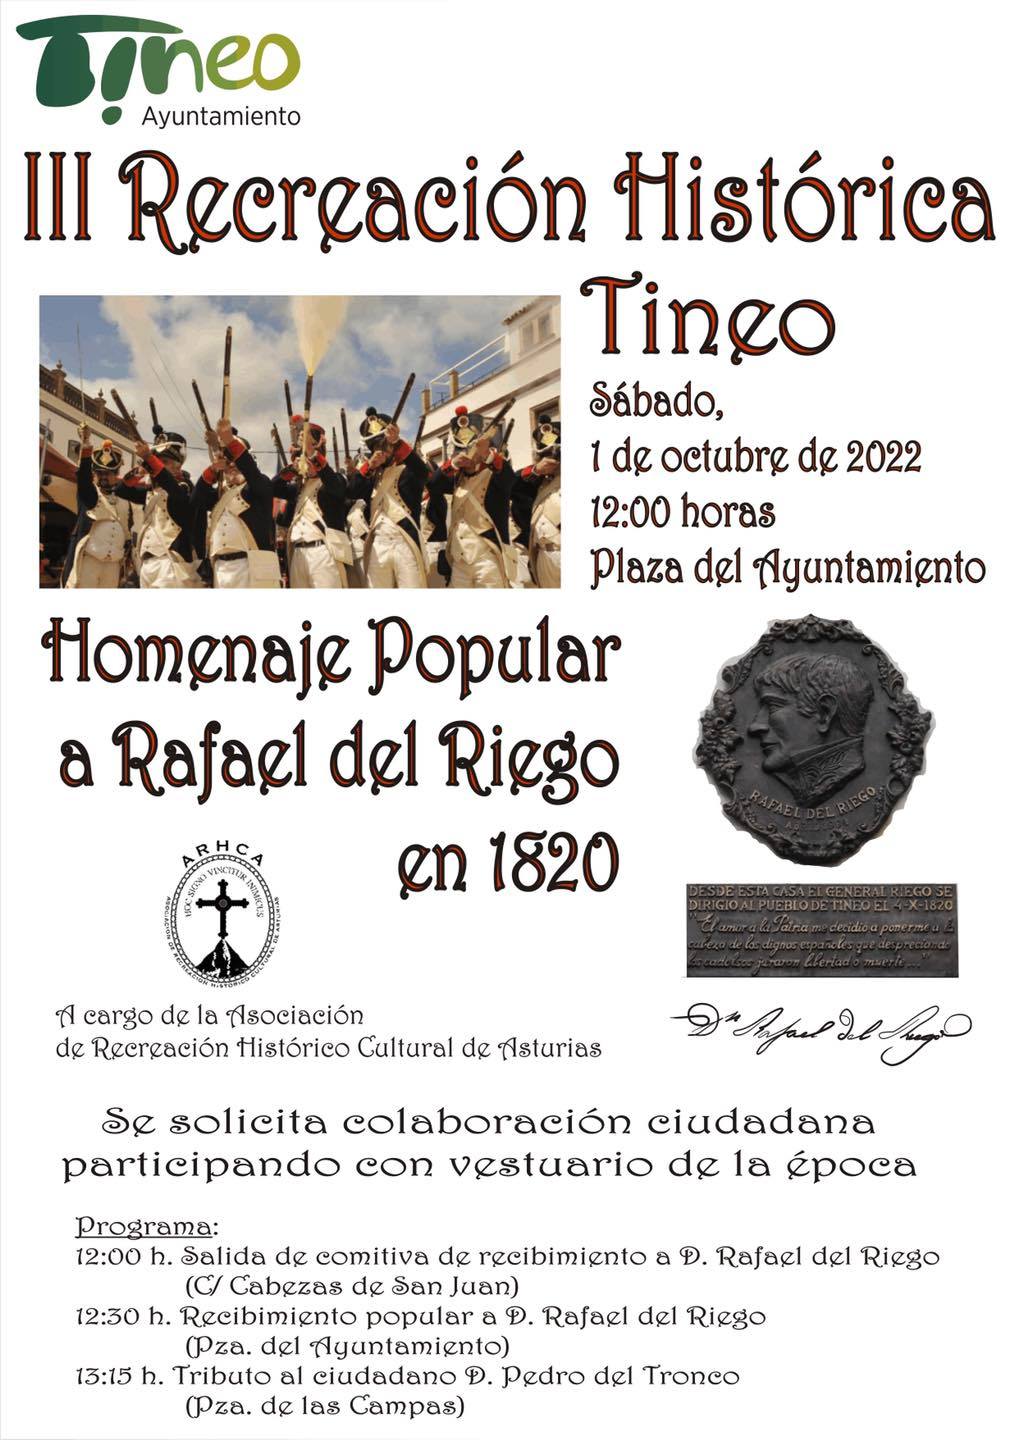 Recreación y homenaje a Rafael del Riego en Tineo